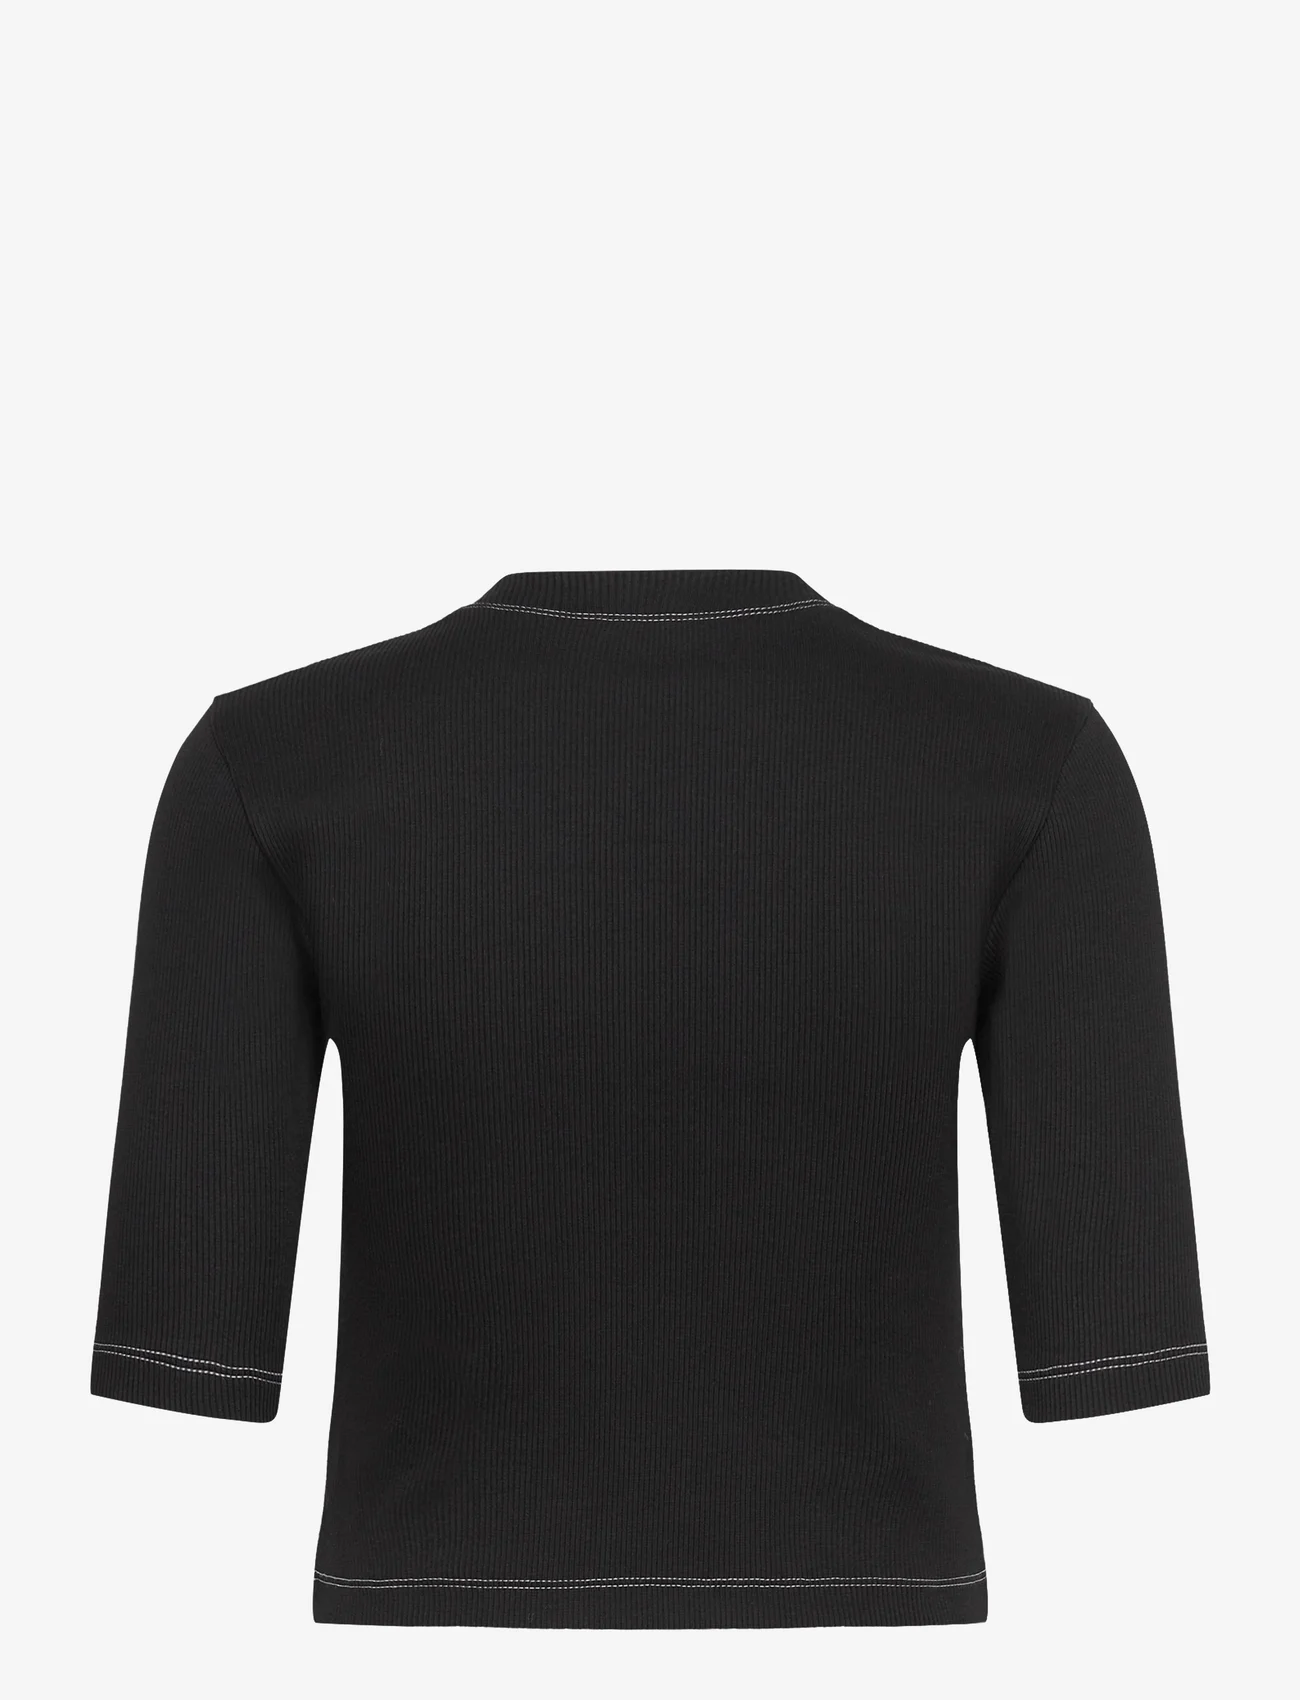 Day Birger et Mikkelsen - Bram - Heavy Rib - t-shirts & tops - black - 1